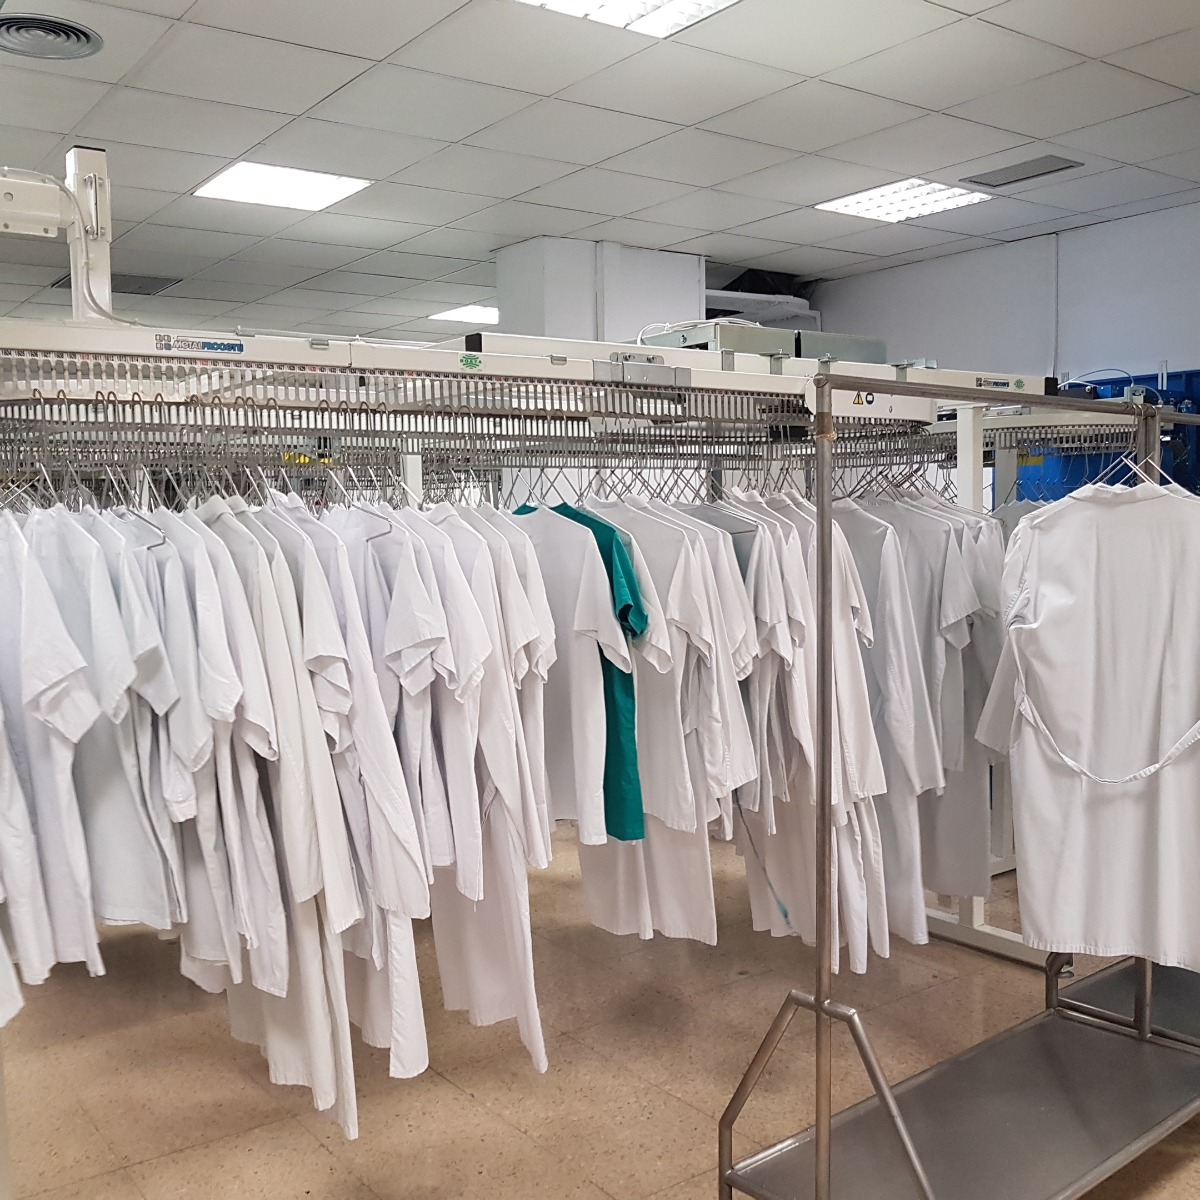 Eficiencia y Control: Boaya en la gestión de uniformes hospitalarios